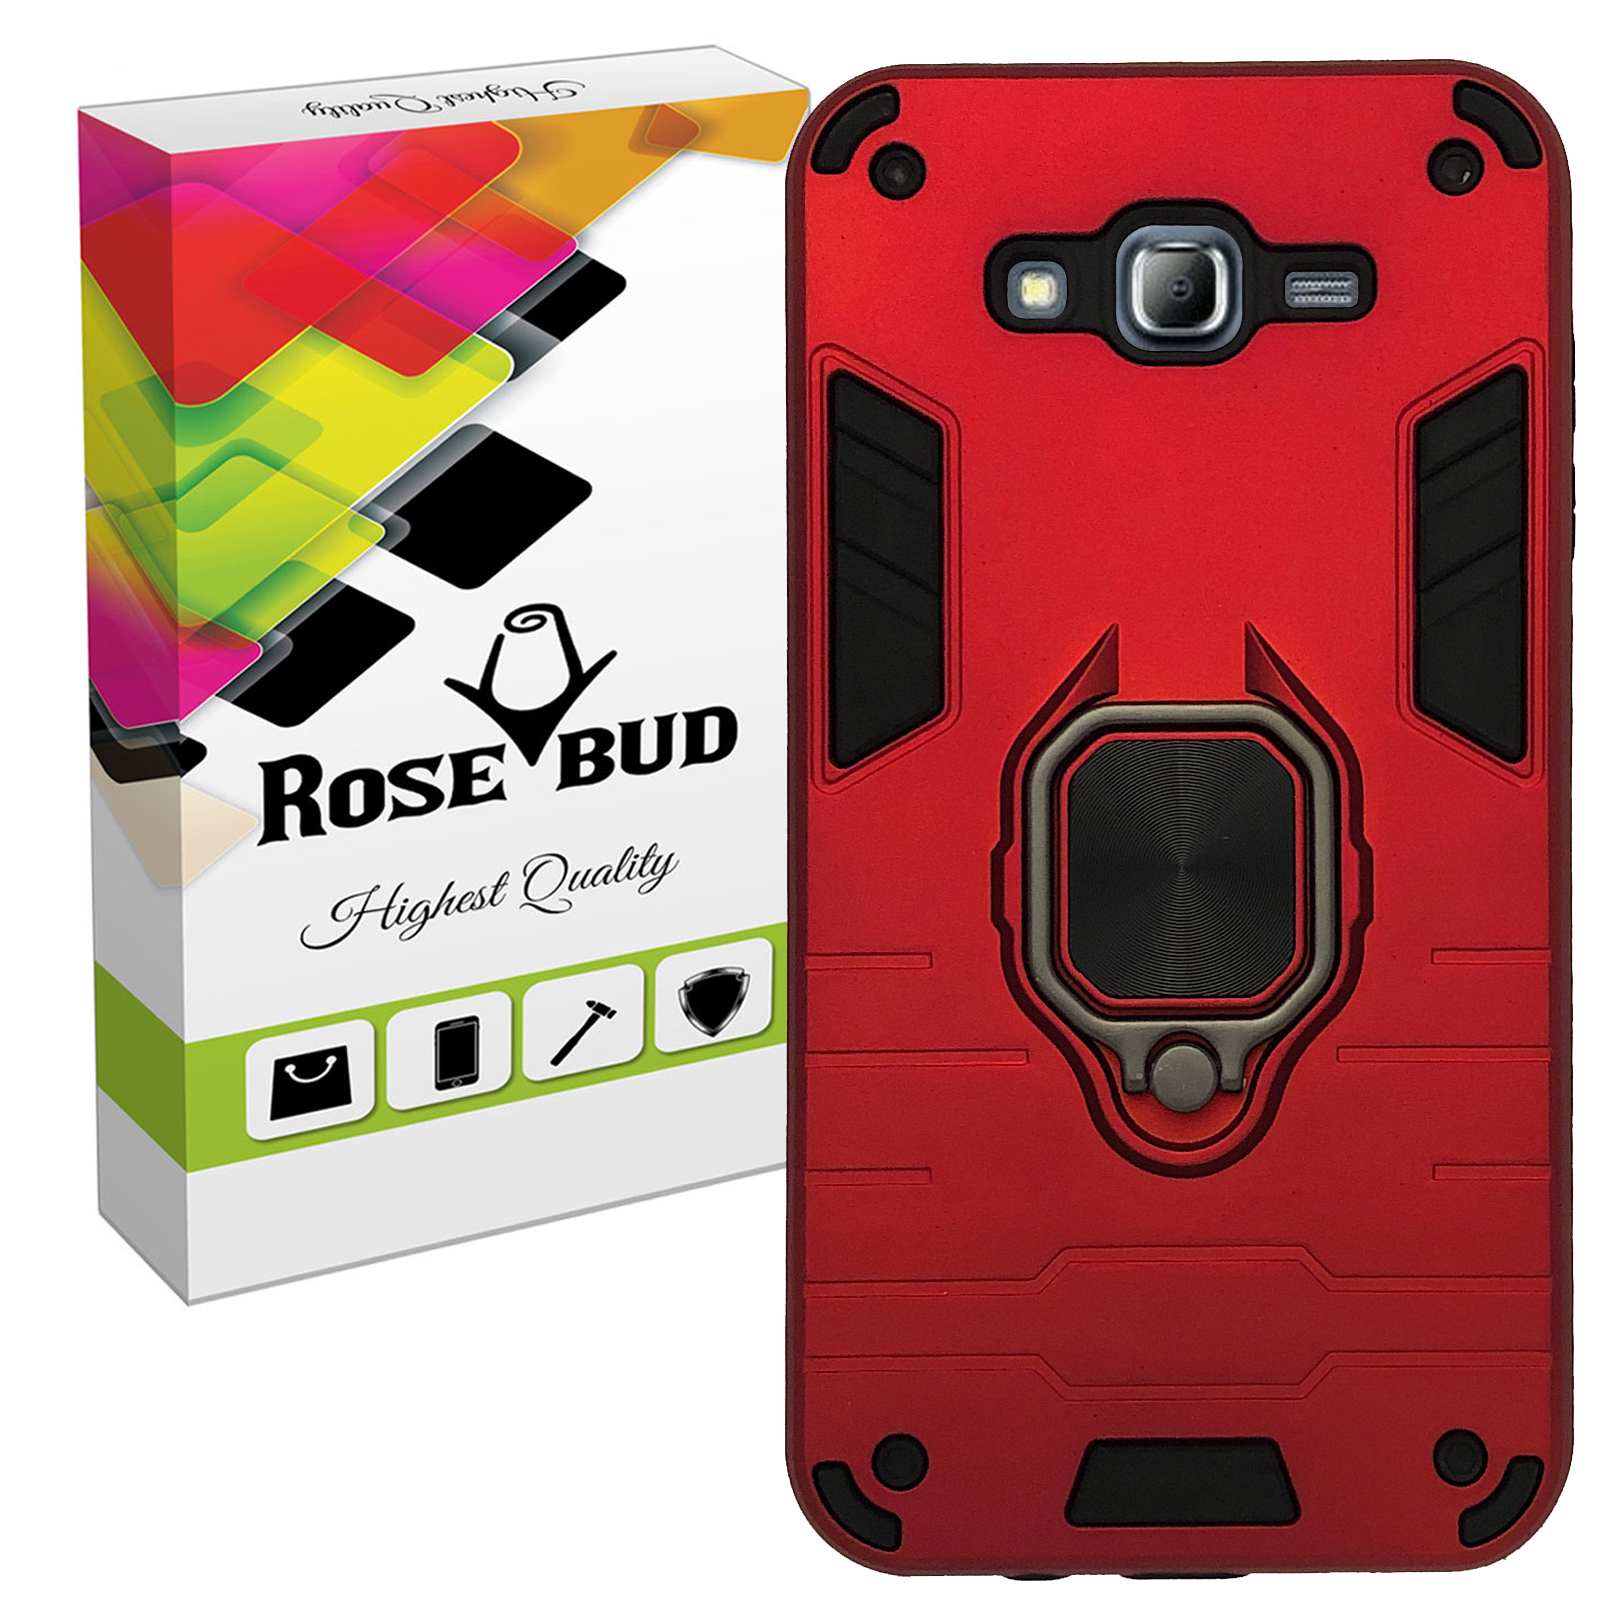 کاور رزباد مدل Rosa007 مناسب برای گوشی موبایل سامسونگ Galaxy J7 2015